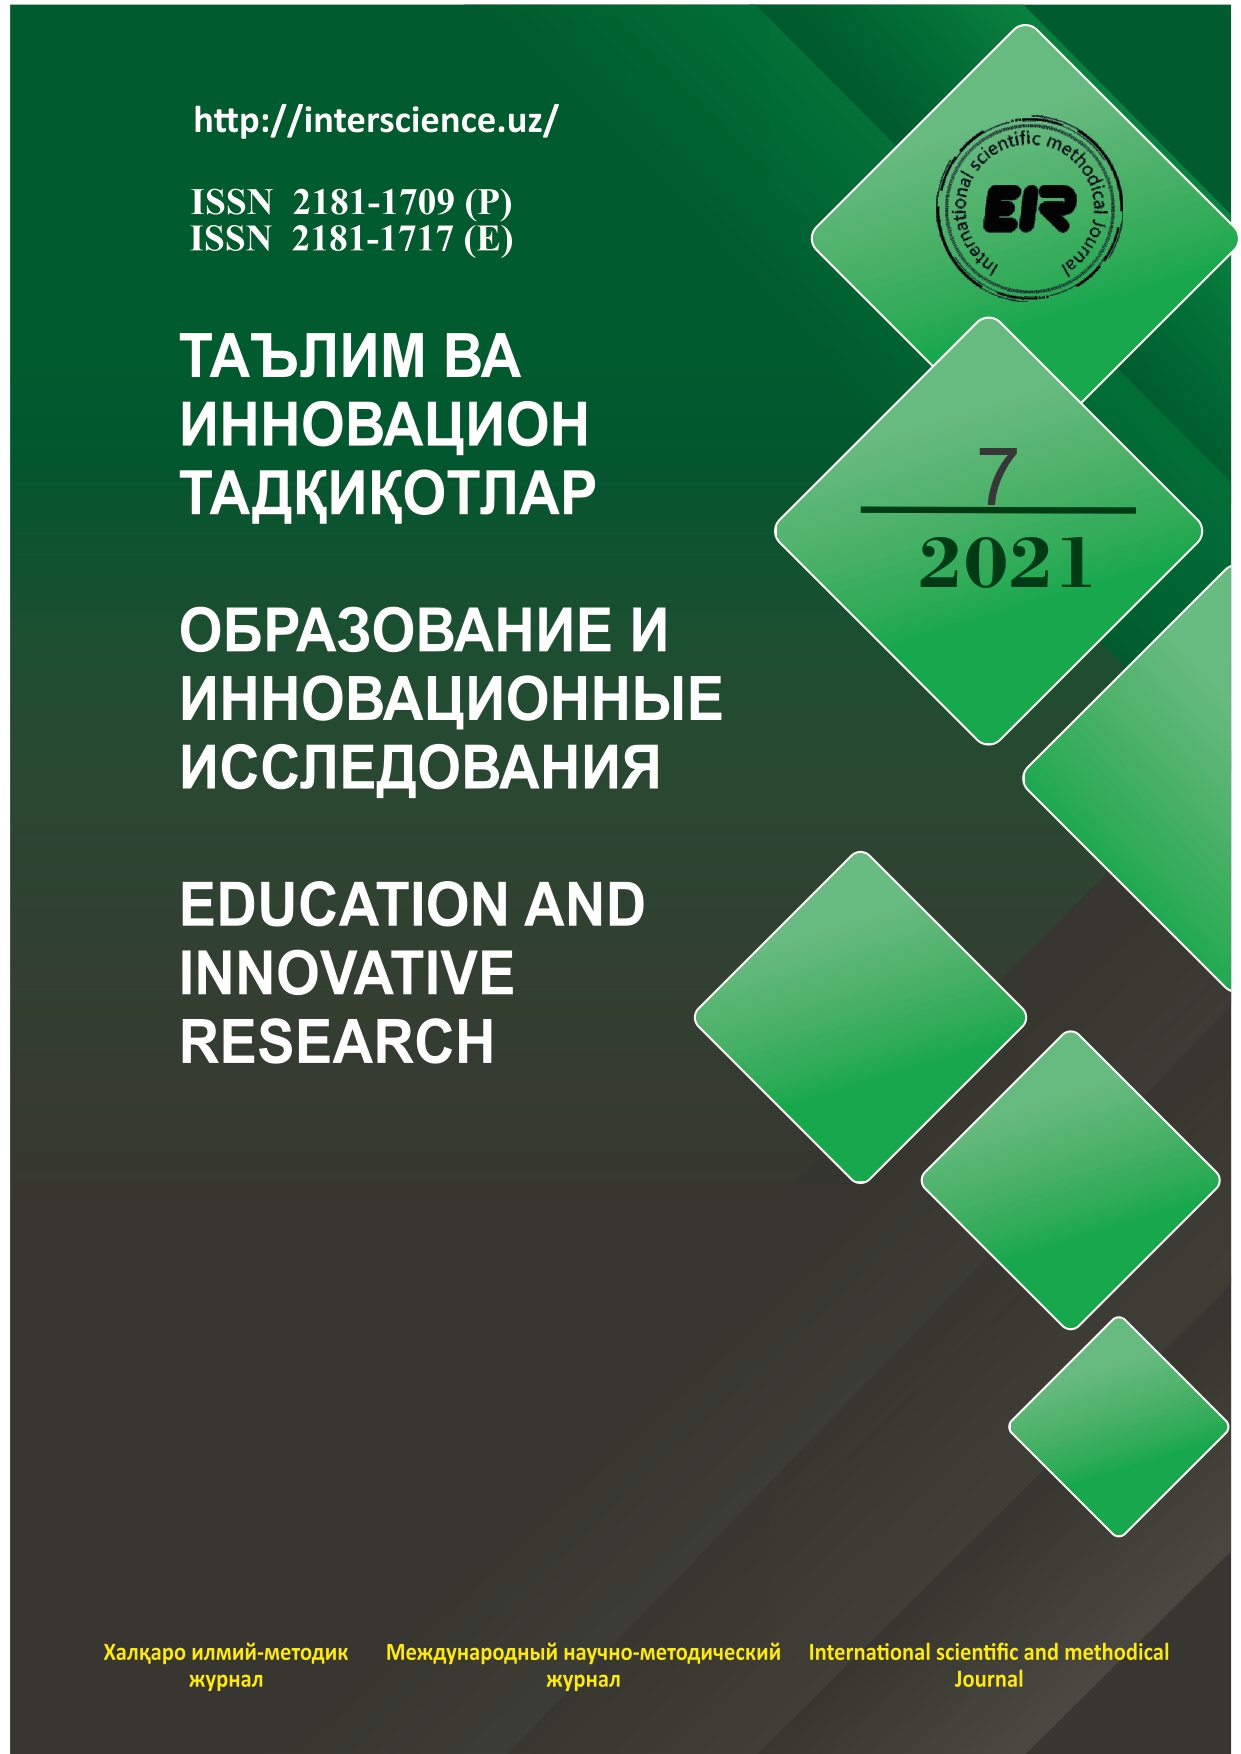 					Показать № 7 (2021): Образование и инновационные исследования
				